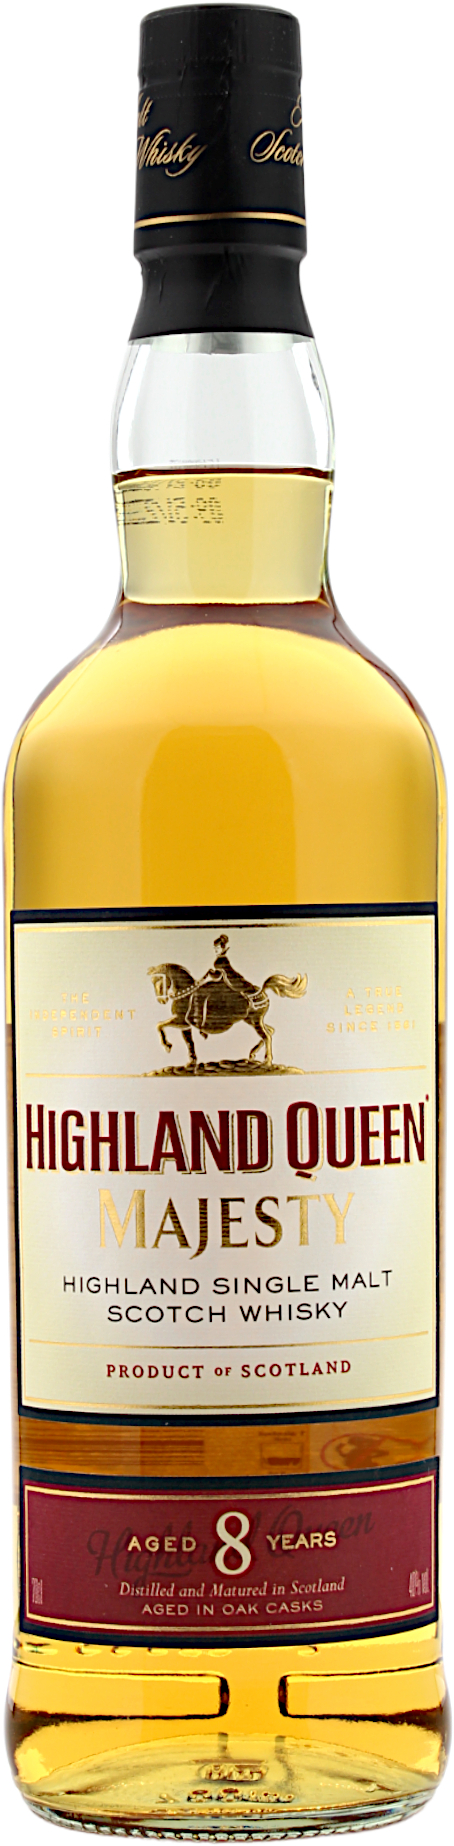 Highland Queen Majesty 8 Jahre Highland Single Malt 40.0% 0,7l